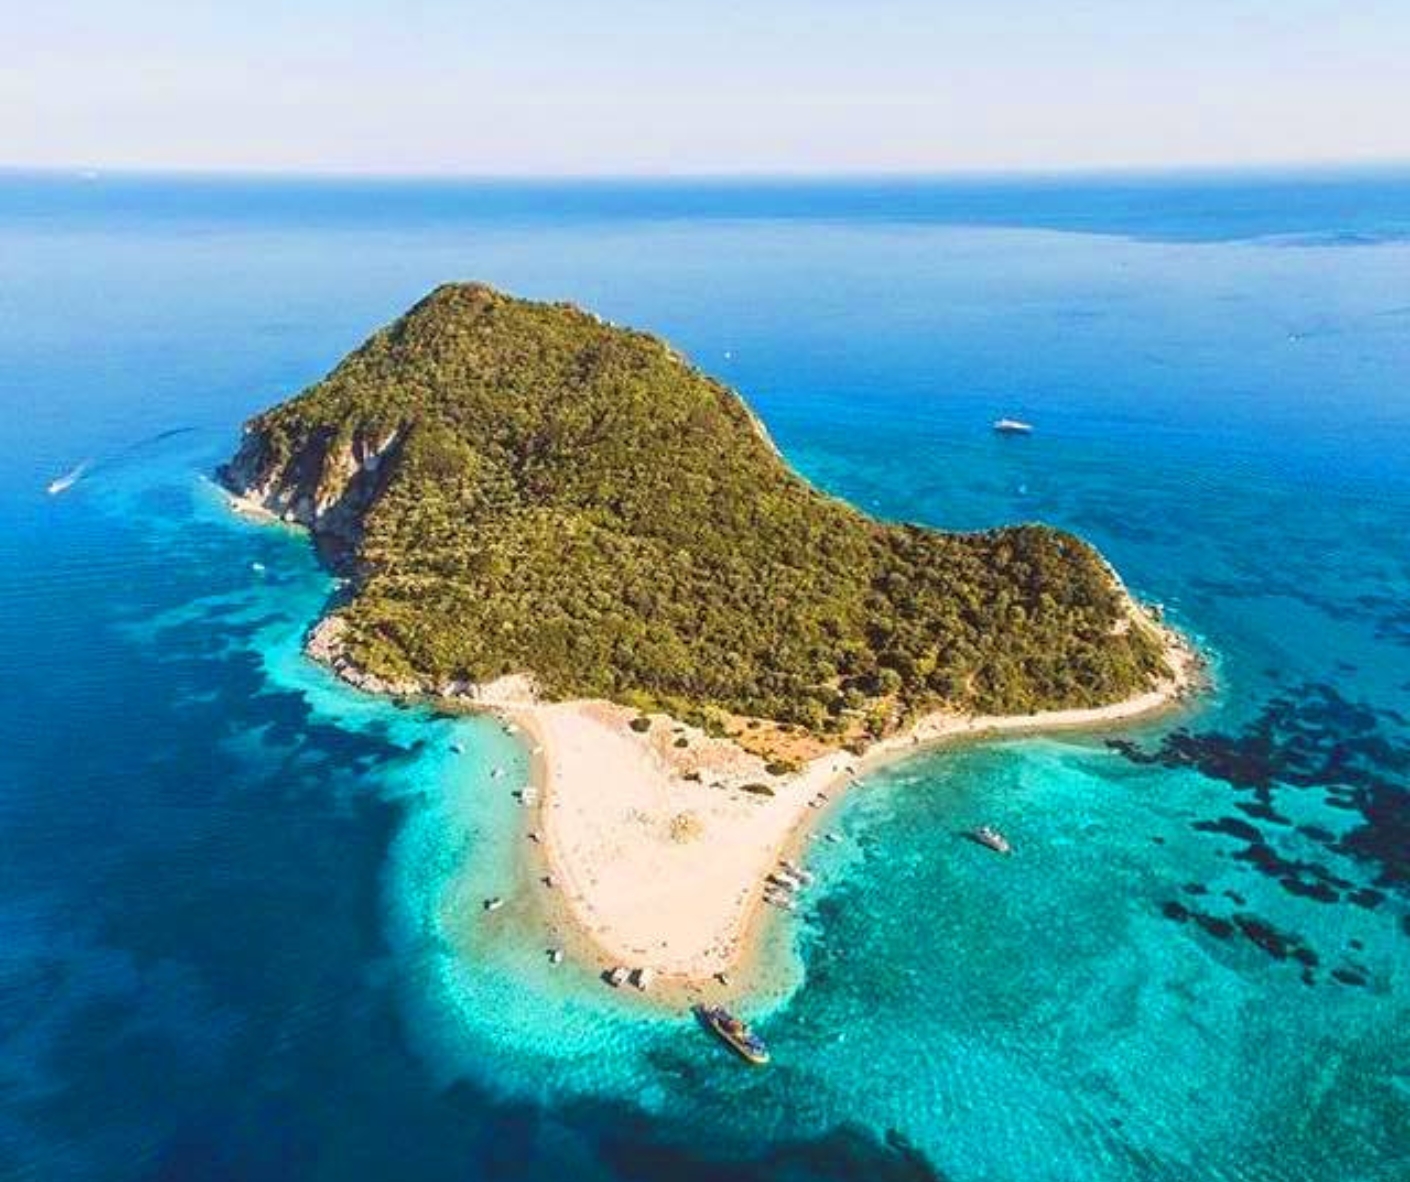 Zielona bezludna wyspa Marathonisi w kształcie żółwia otoczona błękitnym morzem. Zdjęcie z góry, z drona